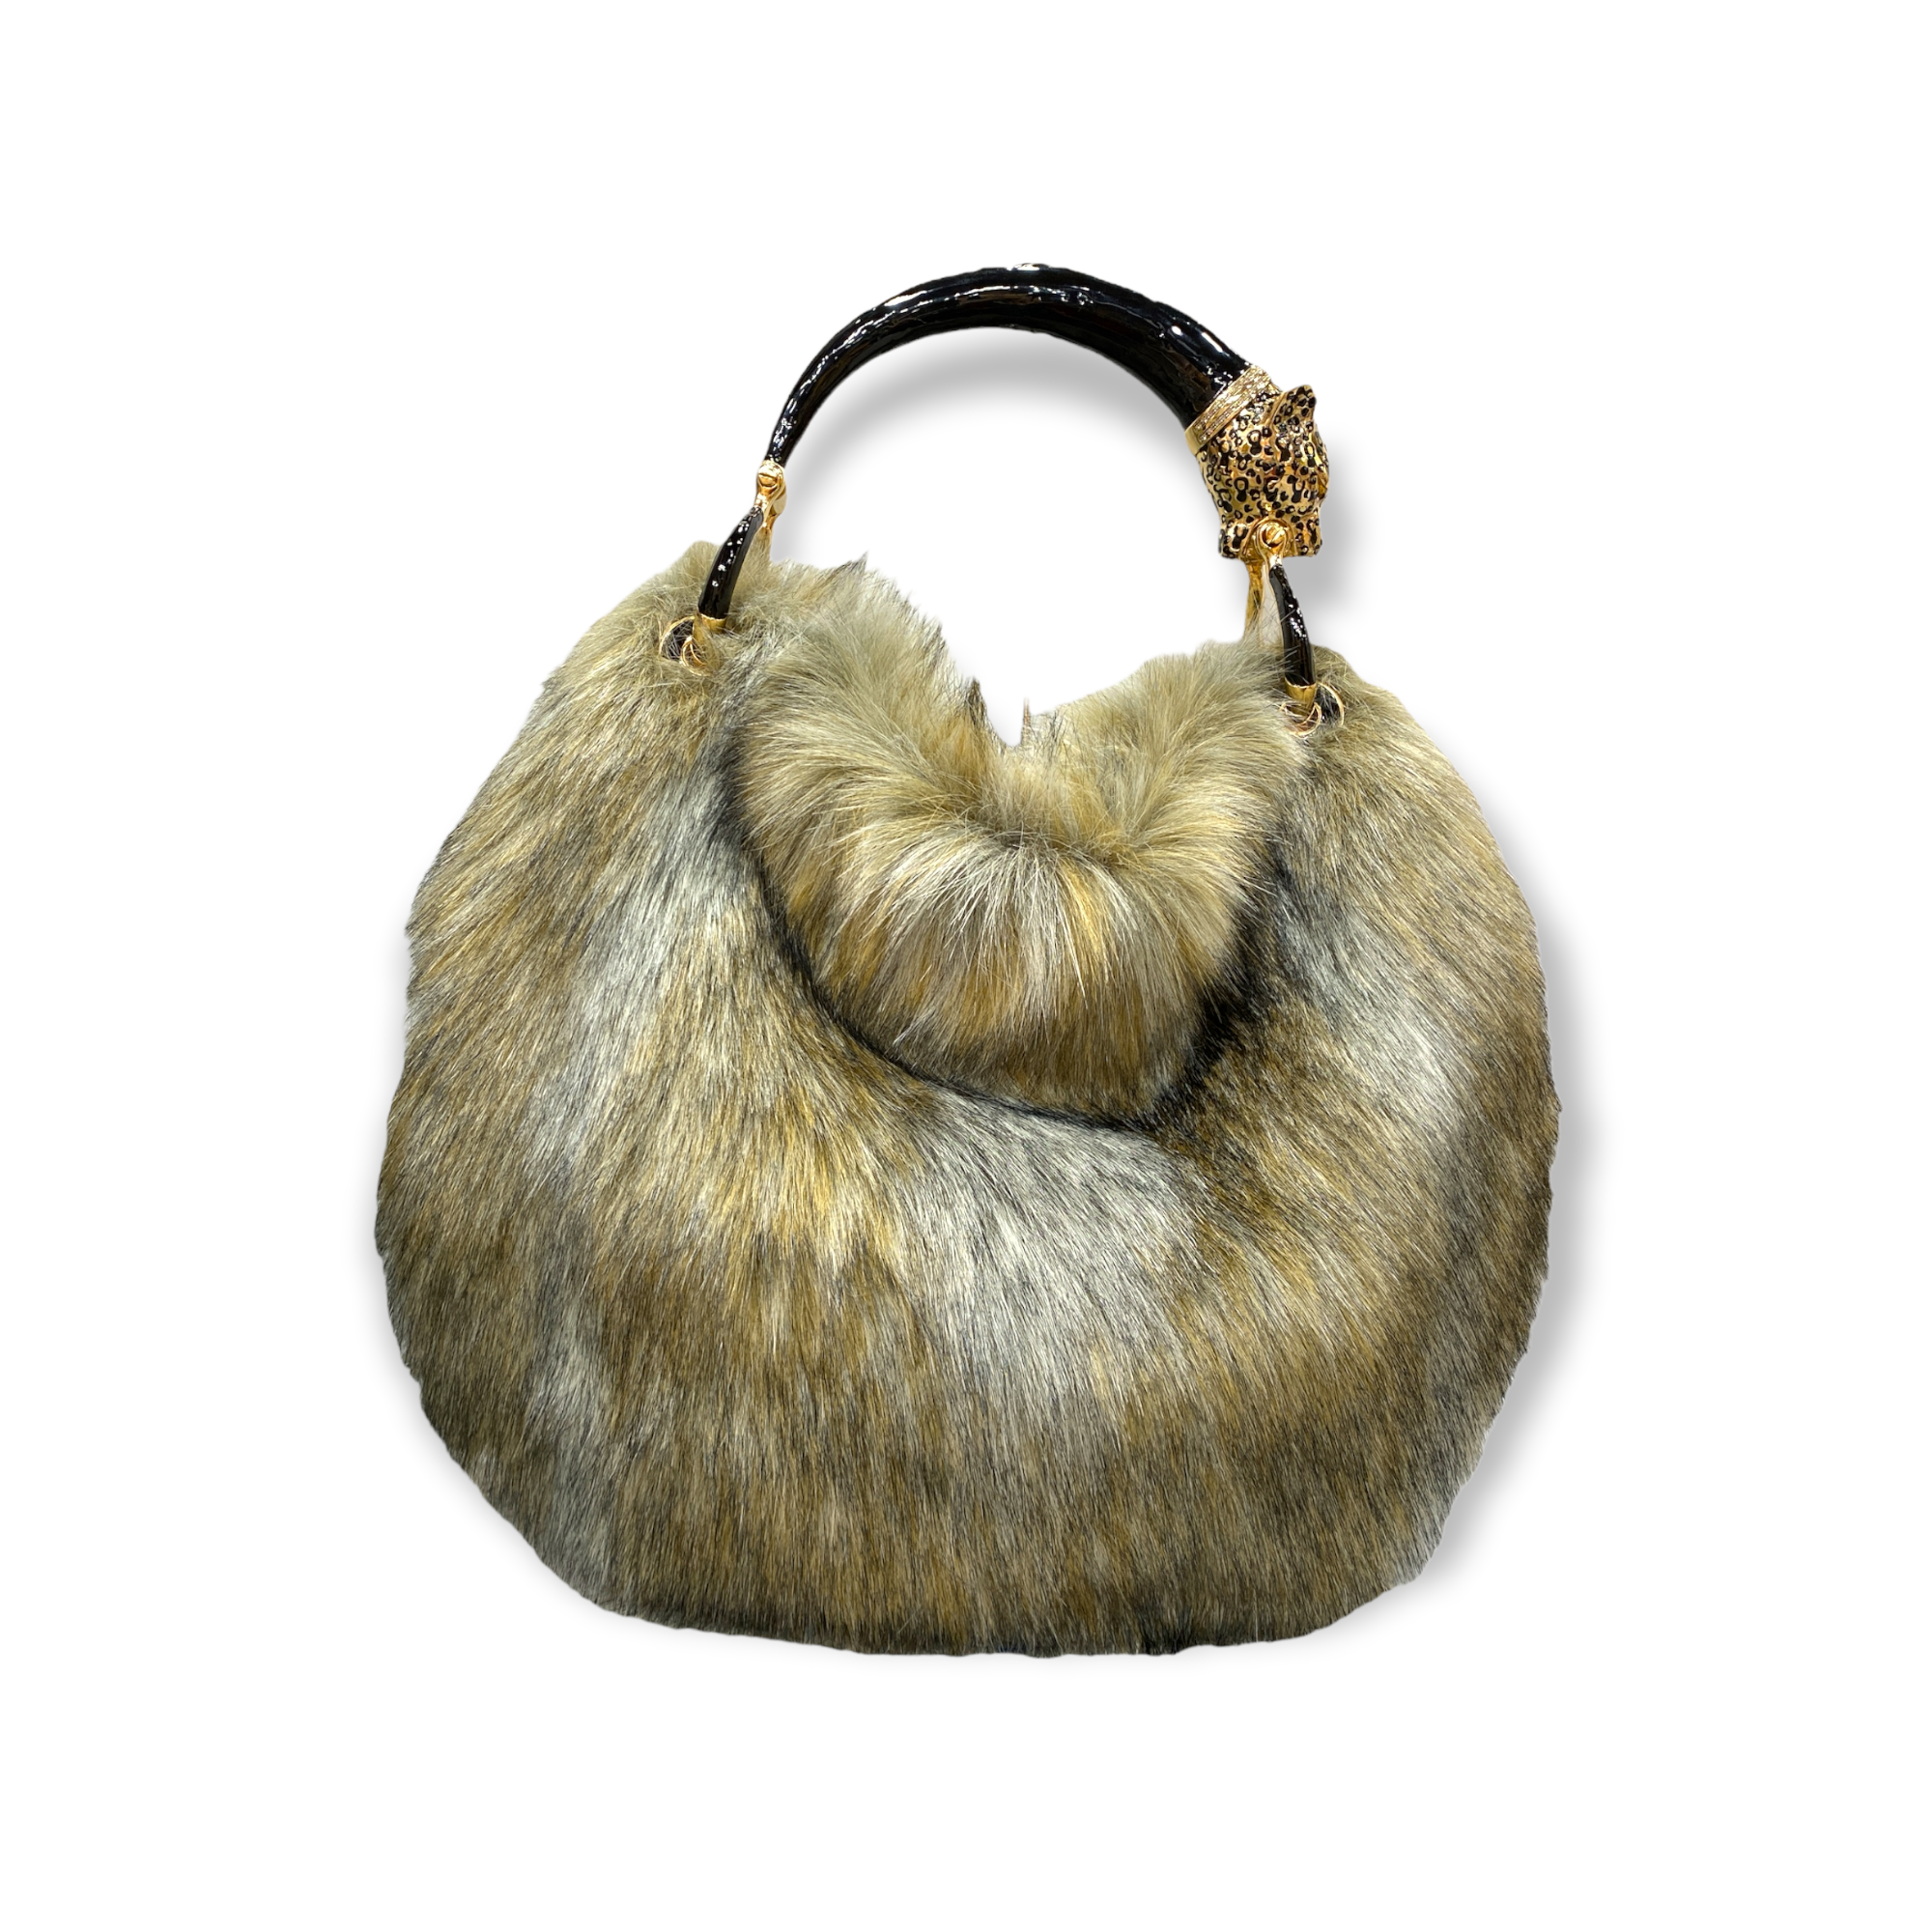 Precious handbag made in Italy in faux fur